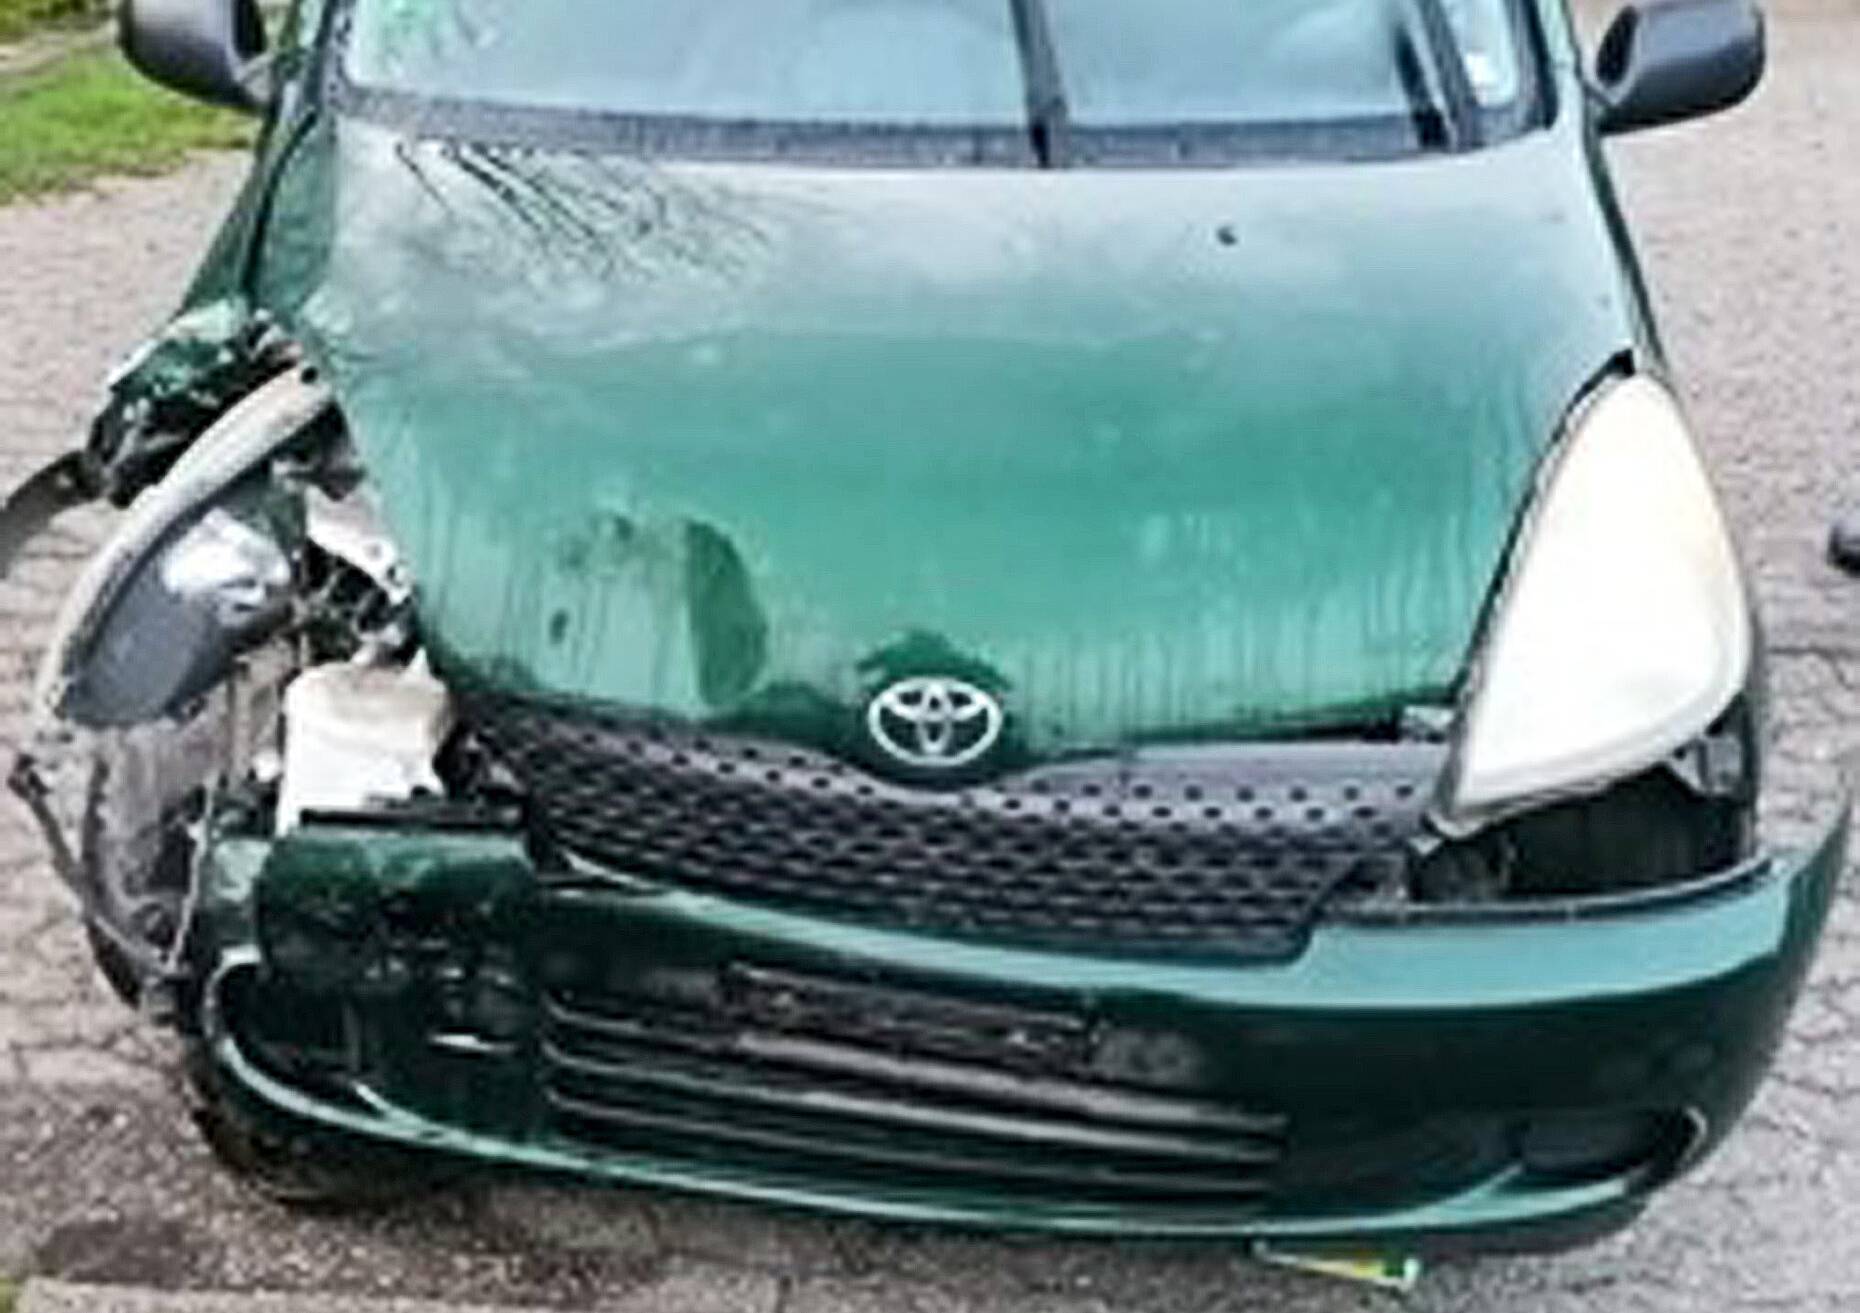  Der stark beschädigte und teilweise vereiste Toyota nach zwei Unfällen. 
  